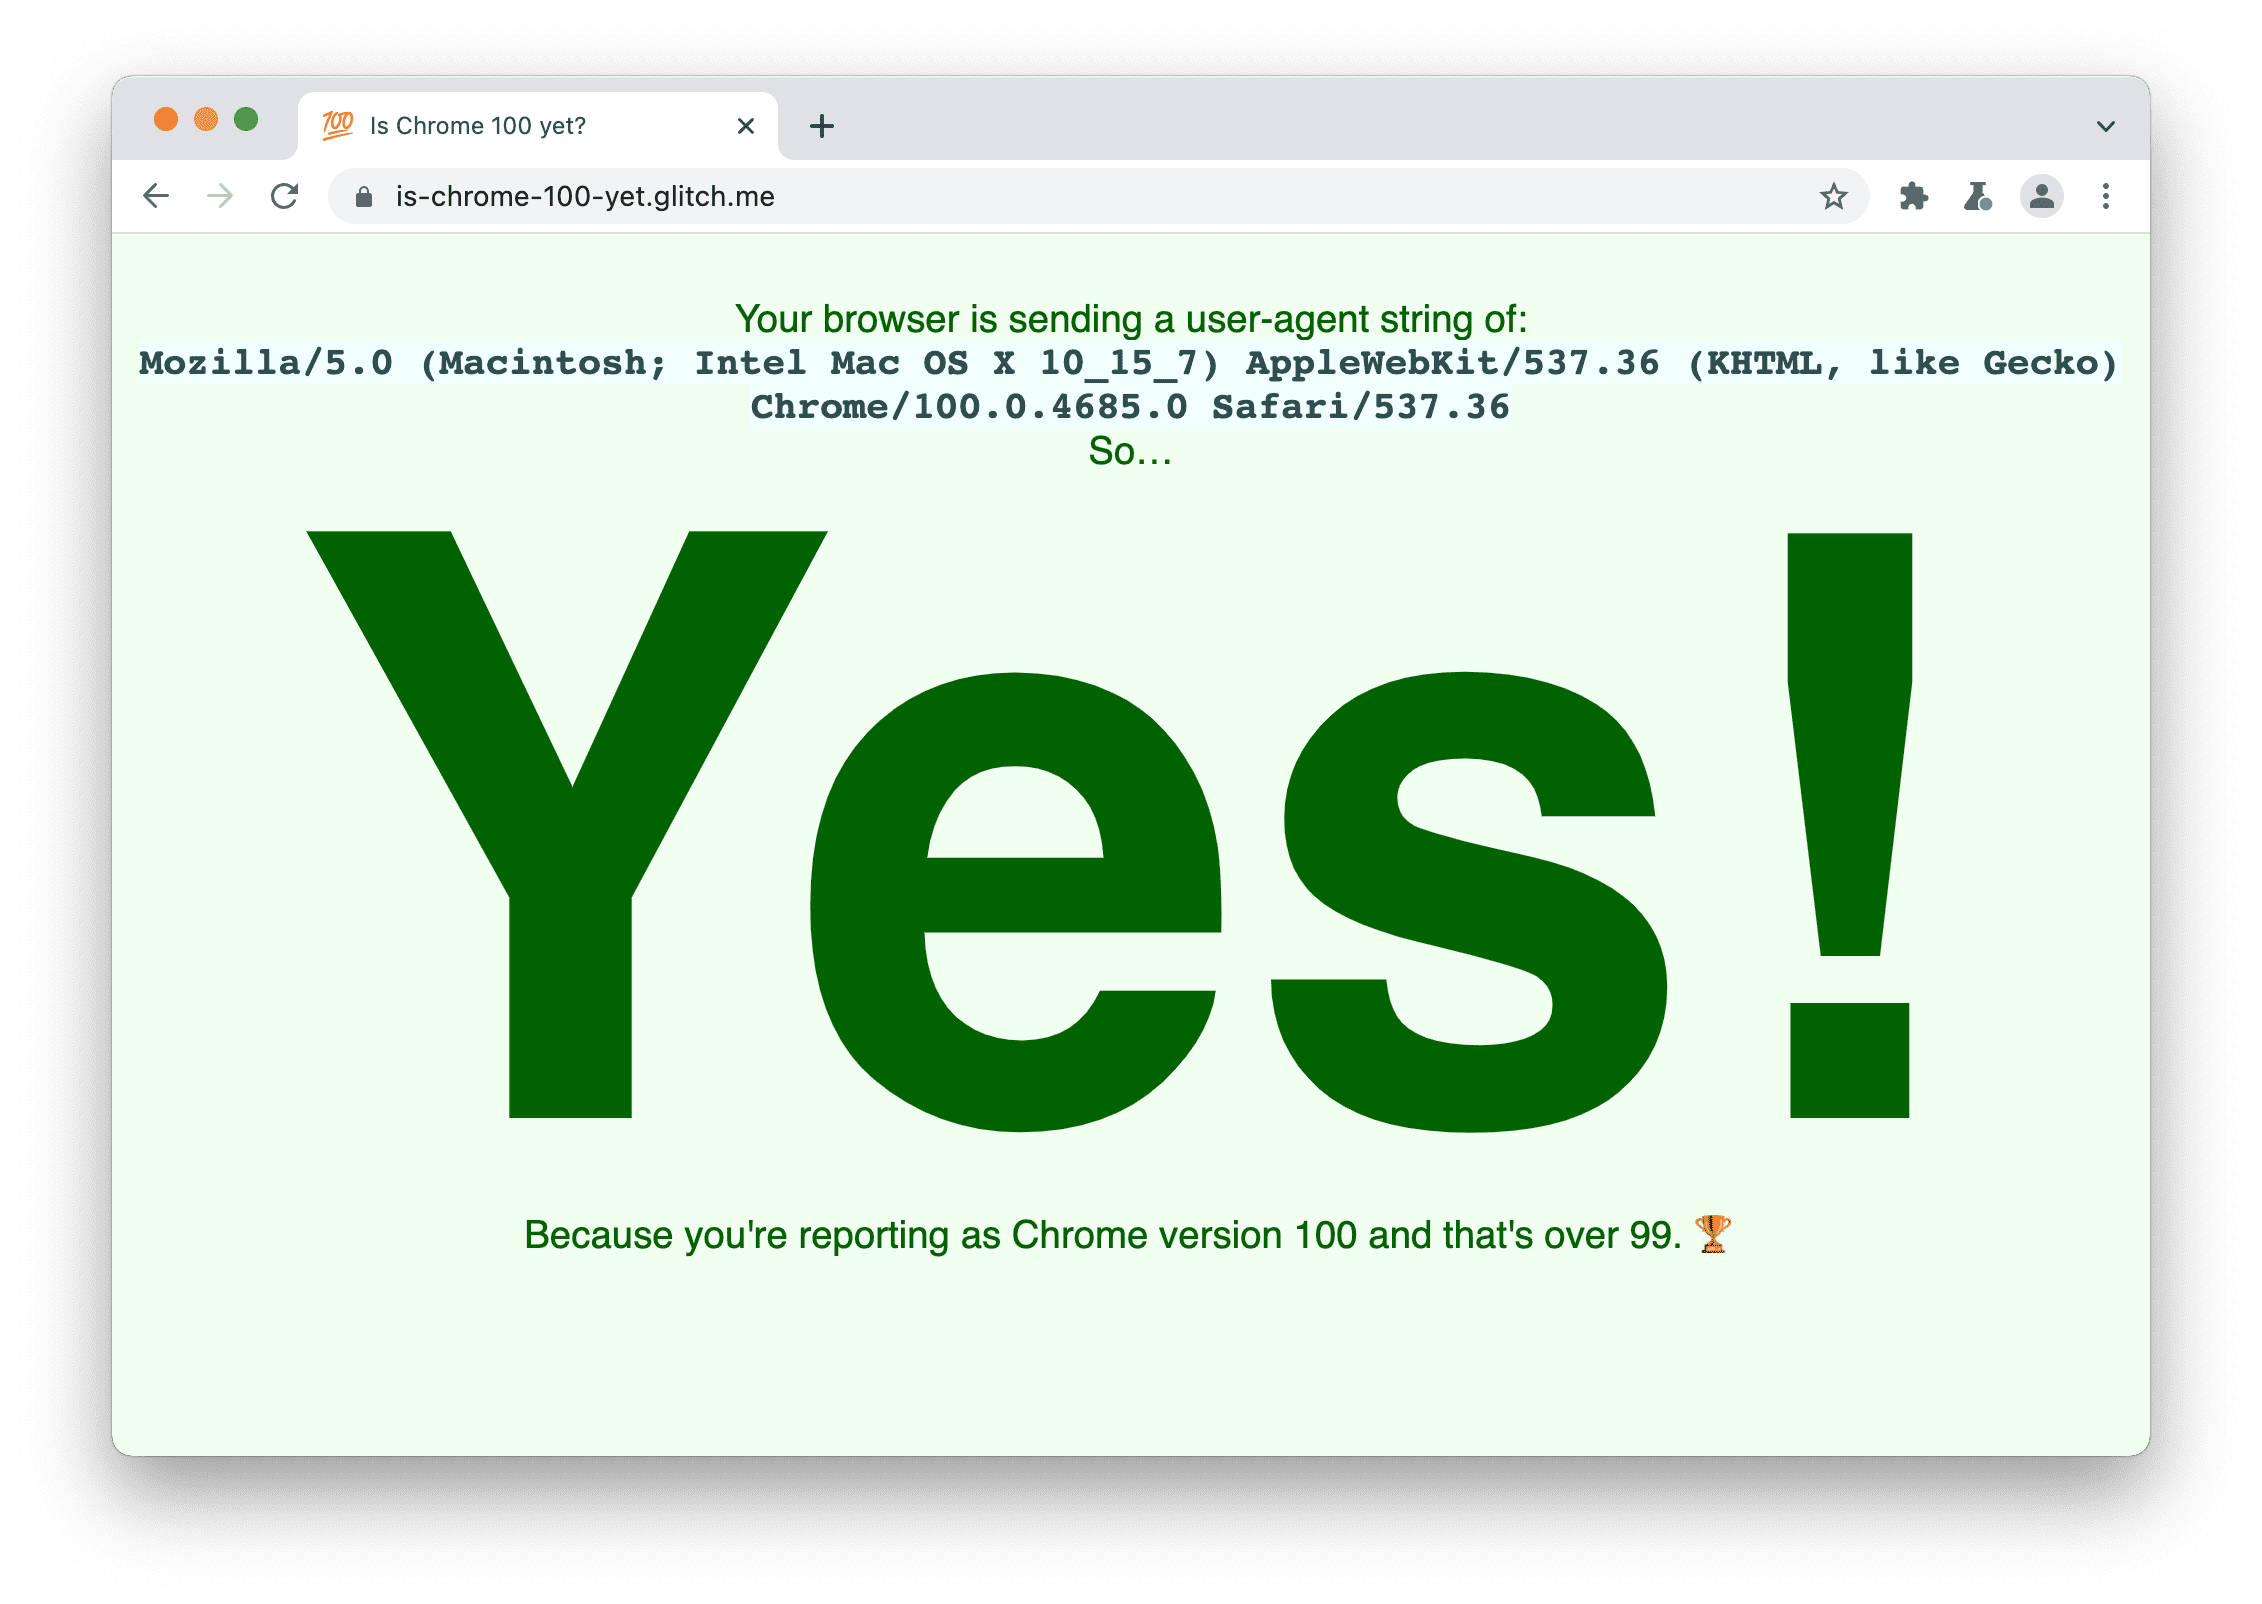 檢查瀏覽器是否傳送 User-Agent 字串 100 的網站。顯示：「是」，因為你回報的 Chrome 版本為 100，已超過 99 版。